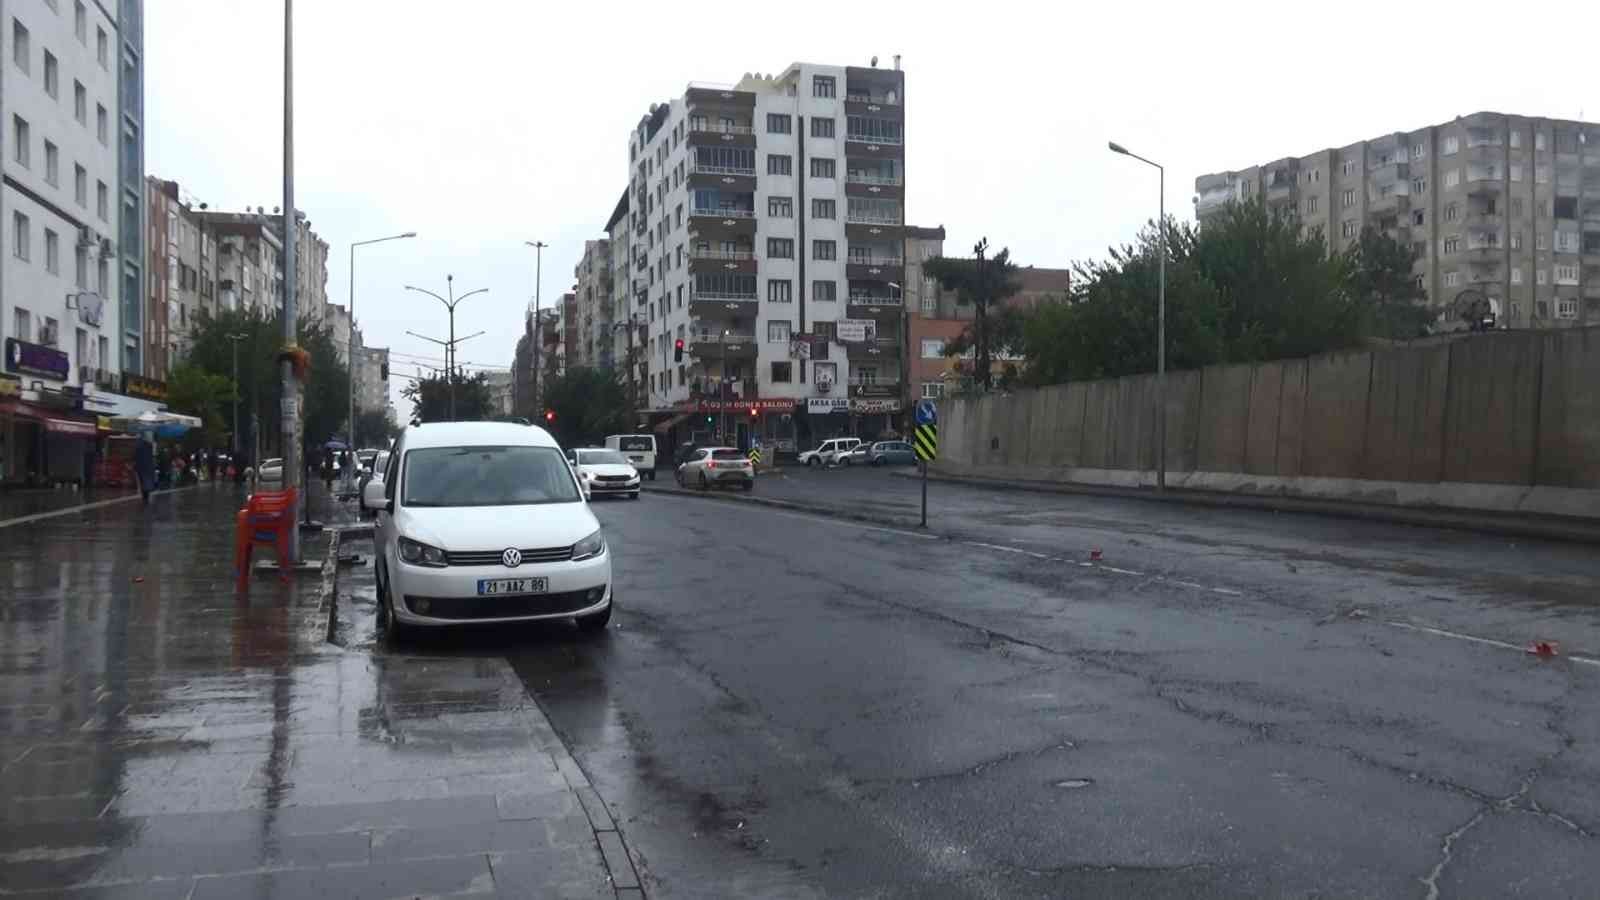 Diyarbakır’da 12 kişinin şehit olduğu bombalı araç saldırısının acısı ilk günkü gibi #diyarbakir